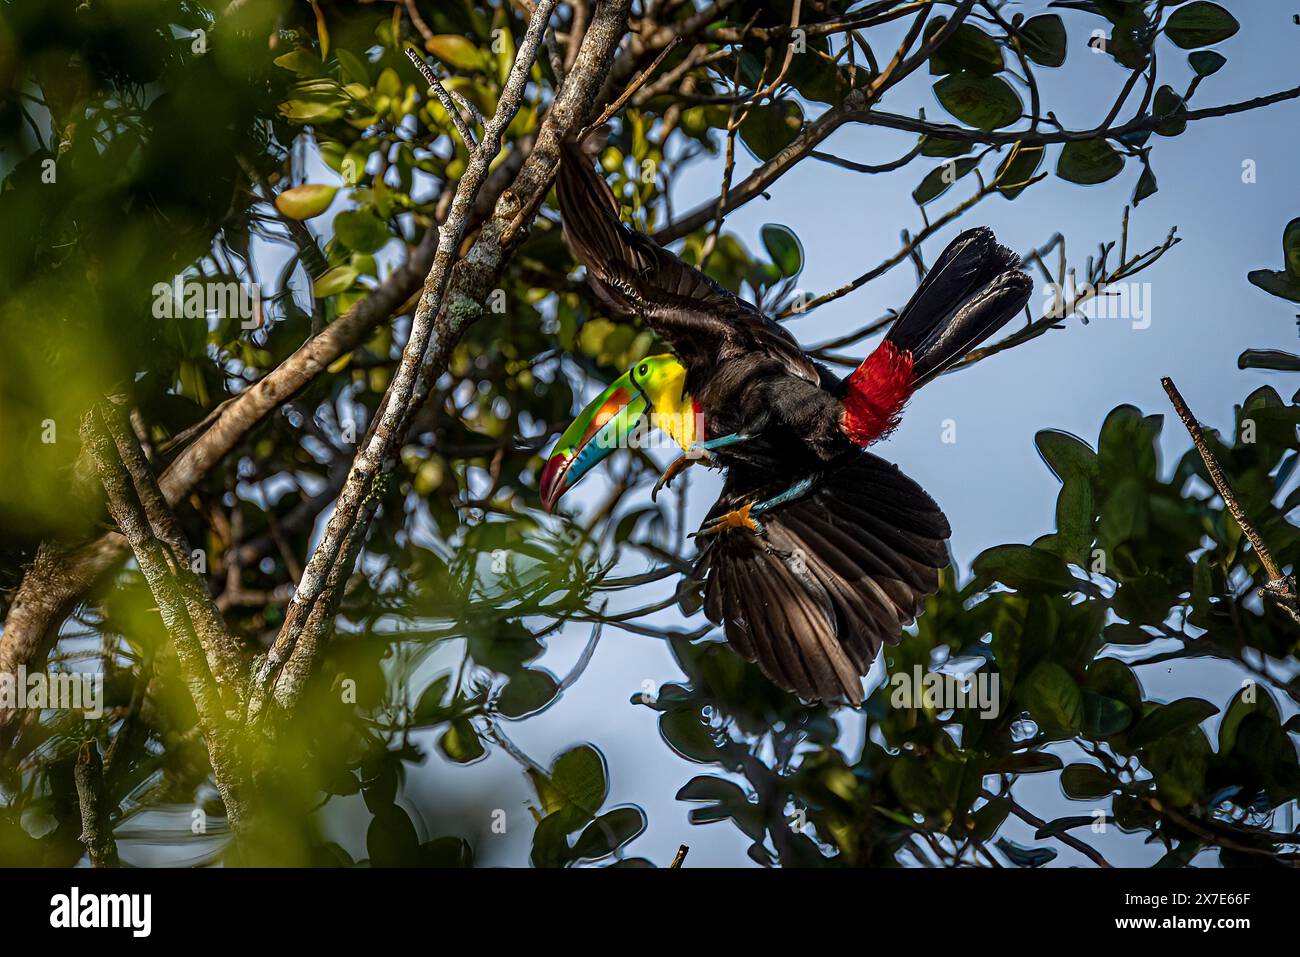 Keel billed toucan in flight approaching trees Stock Photo